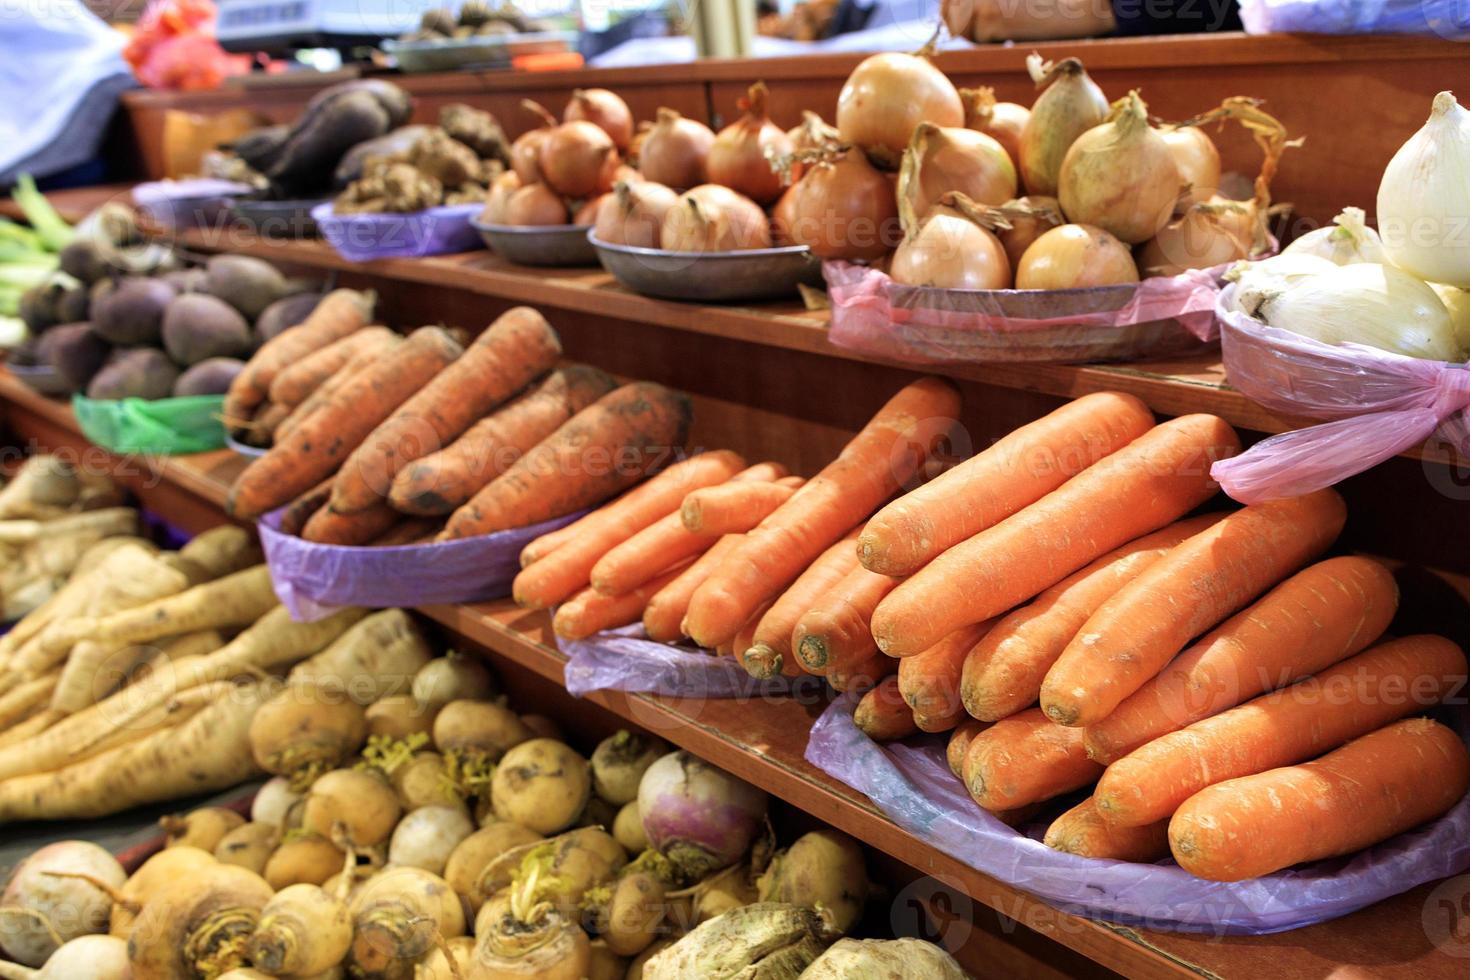 carottes, oignons, racines et autres légumes divers sont vendus sur les étagères des marchés photo